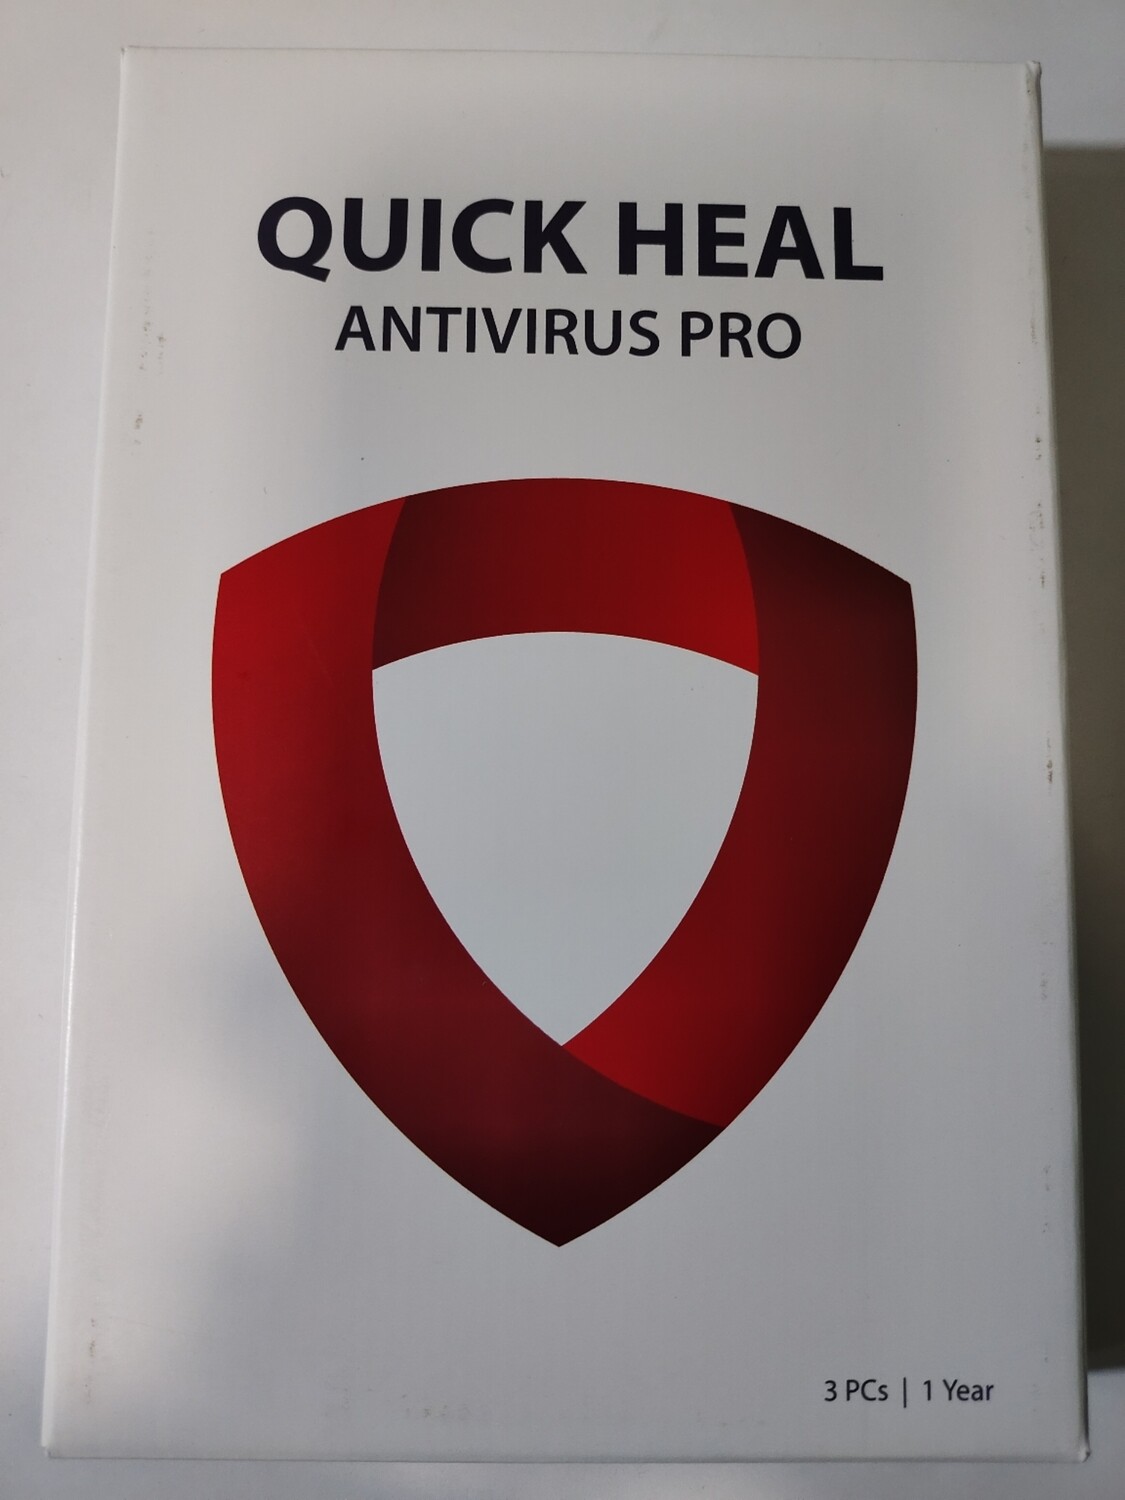 New, 3 User, 1 Year, Quick Heal Antivirus Pro